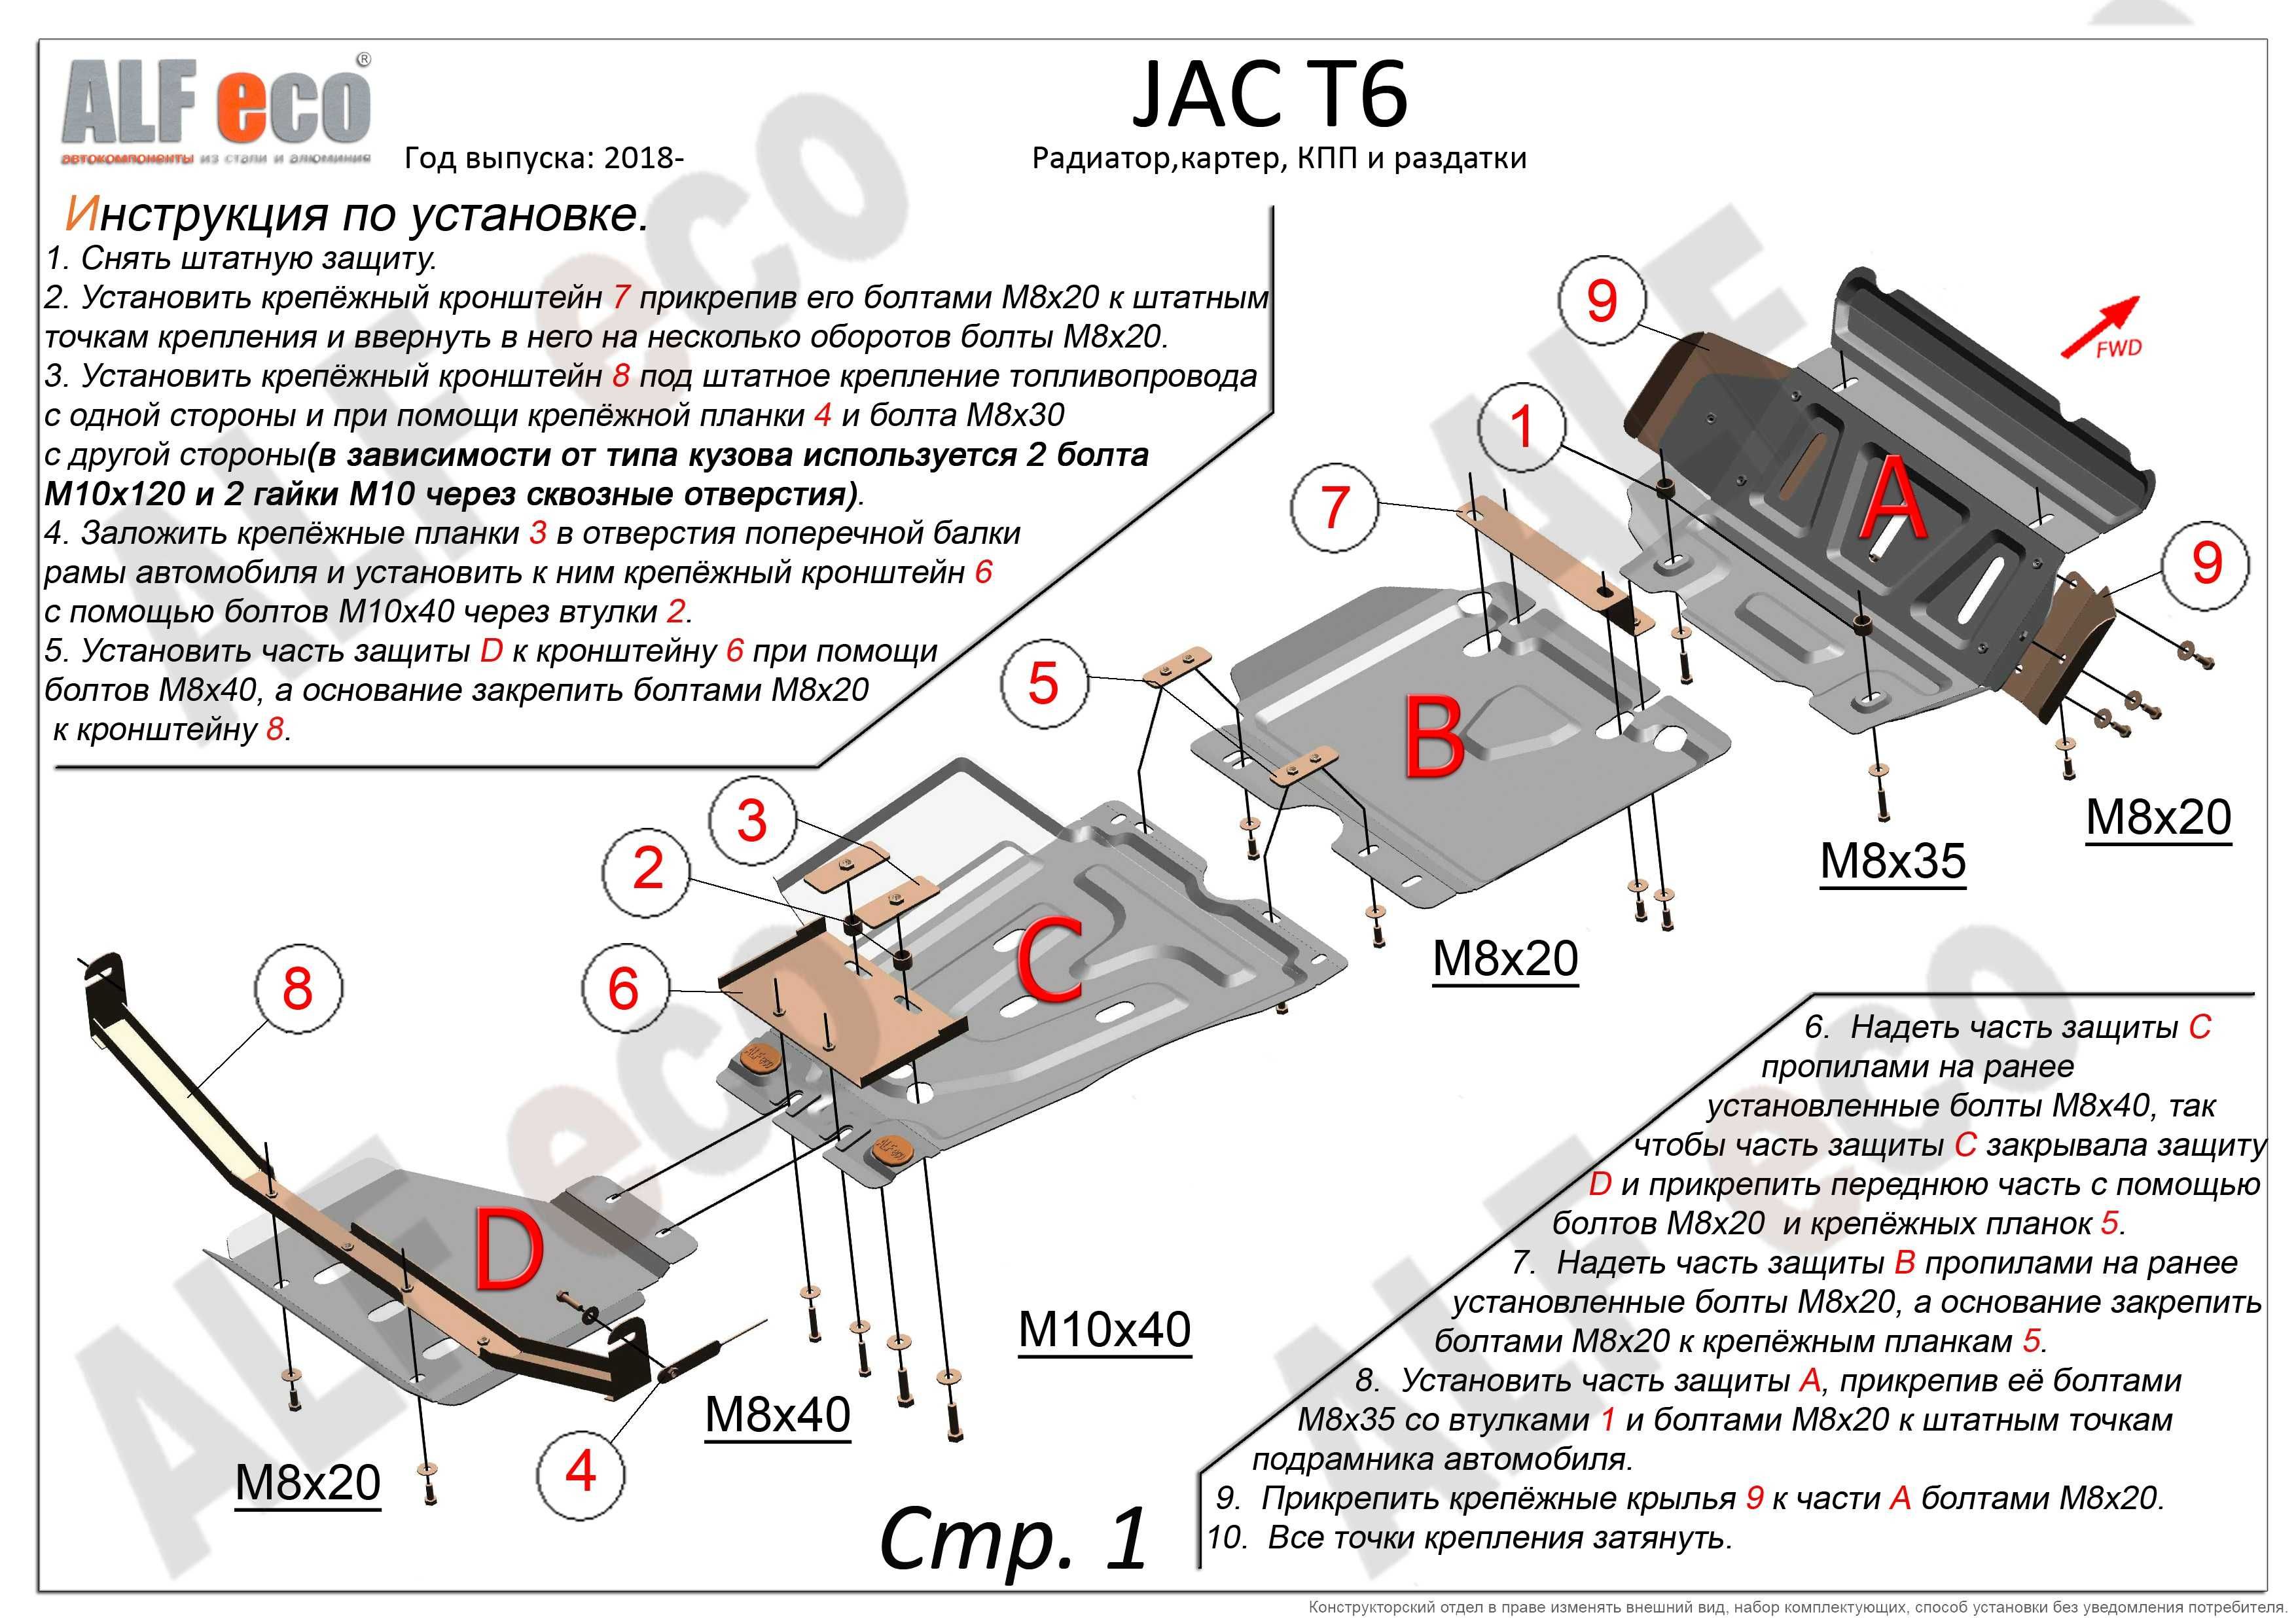 Защита JAC T6 (комплект из 5 защит)